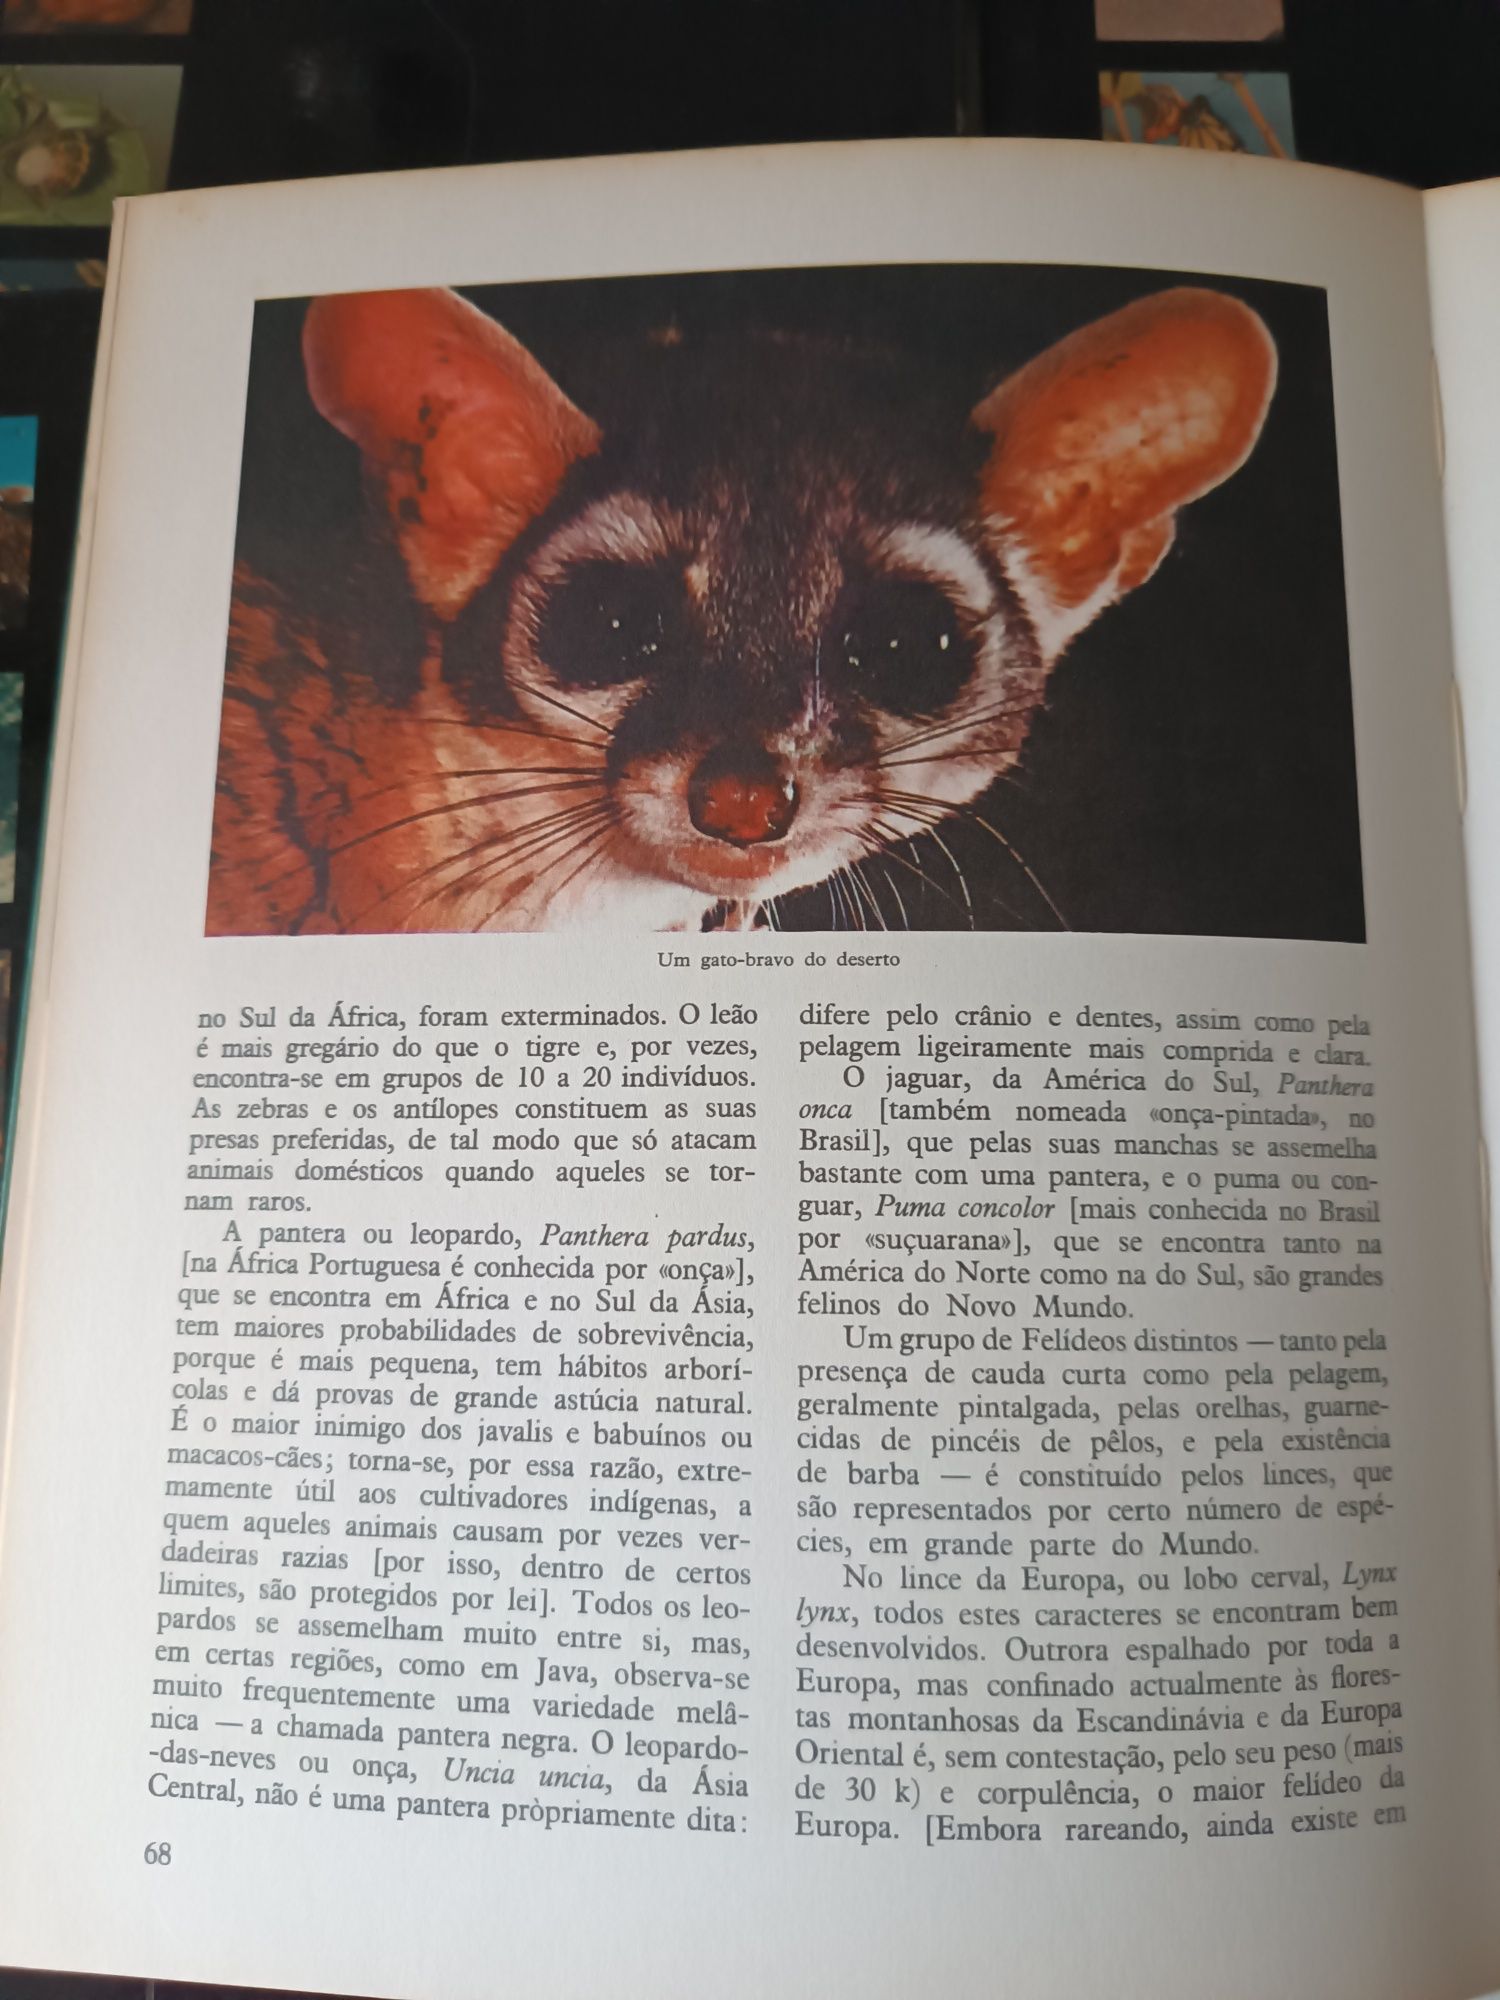 8 Enciclopedias do Reino Animal - Maurice Burton